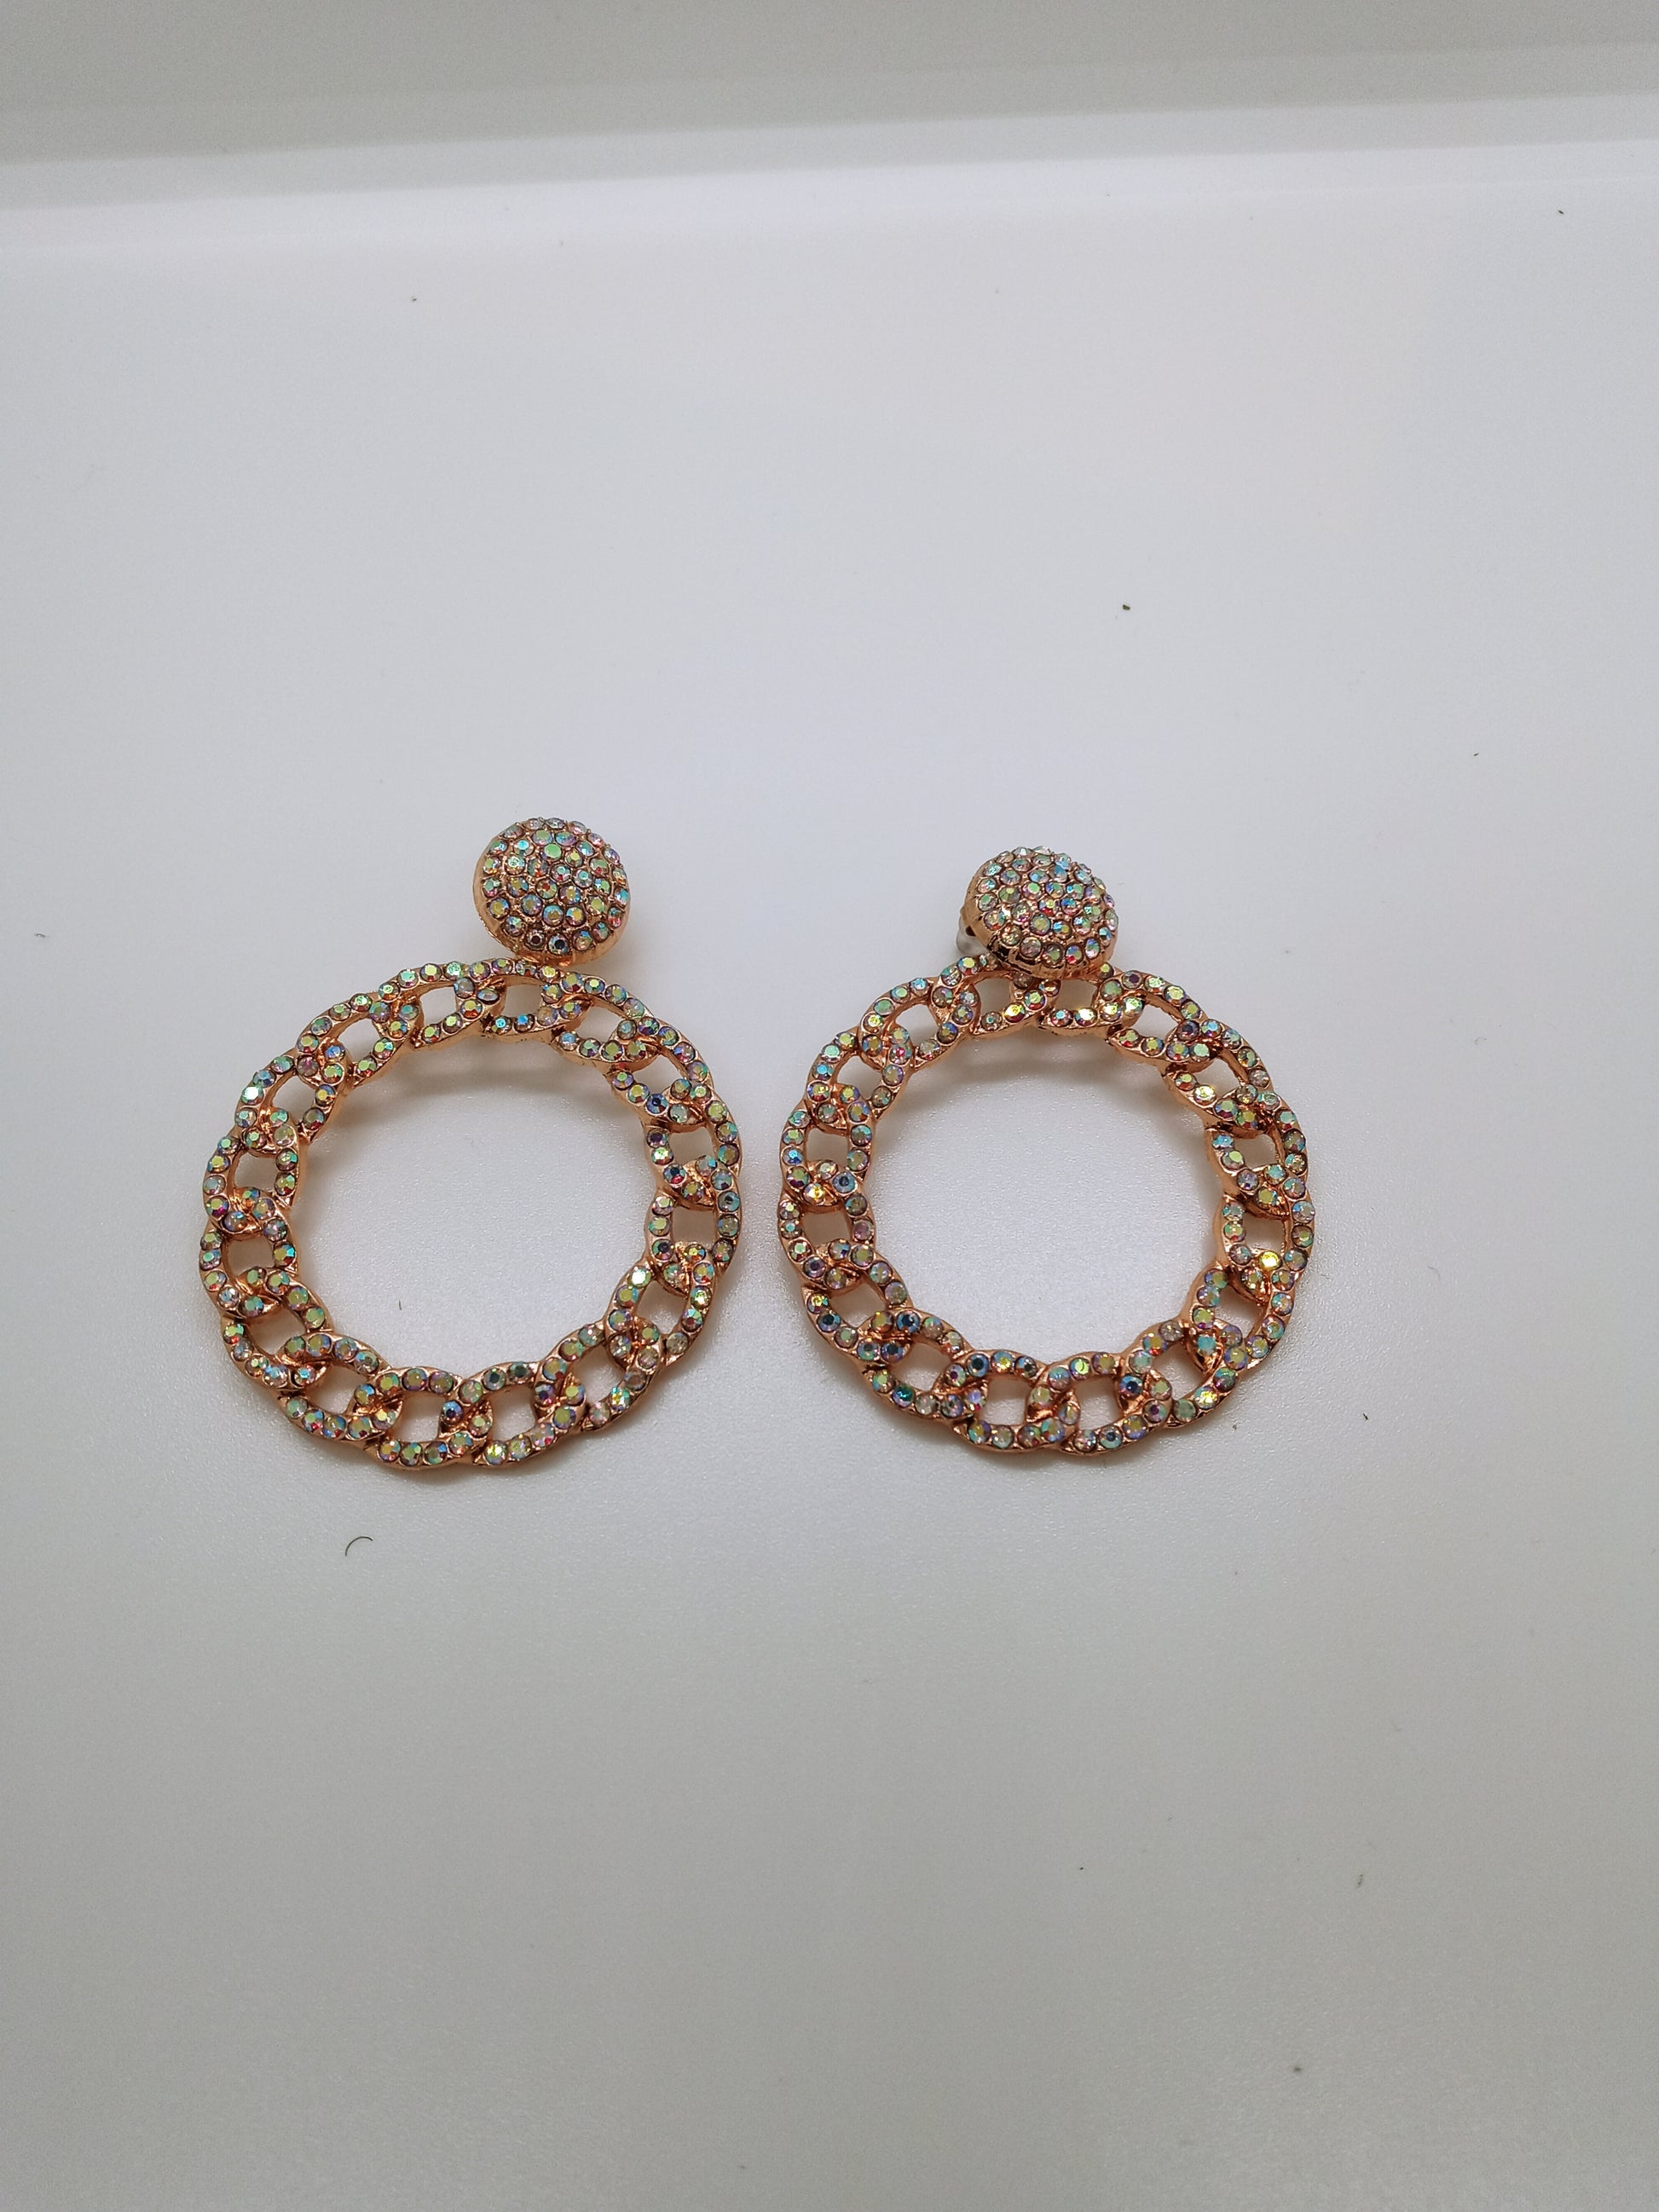 christelle-gold-earrings.jpg